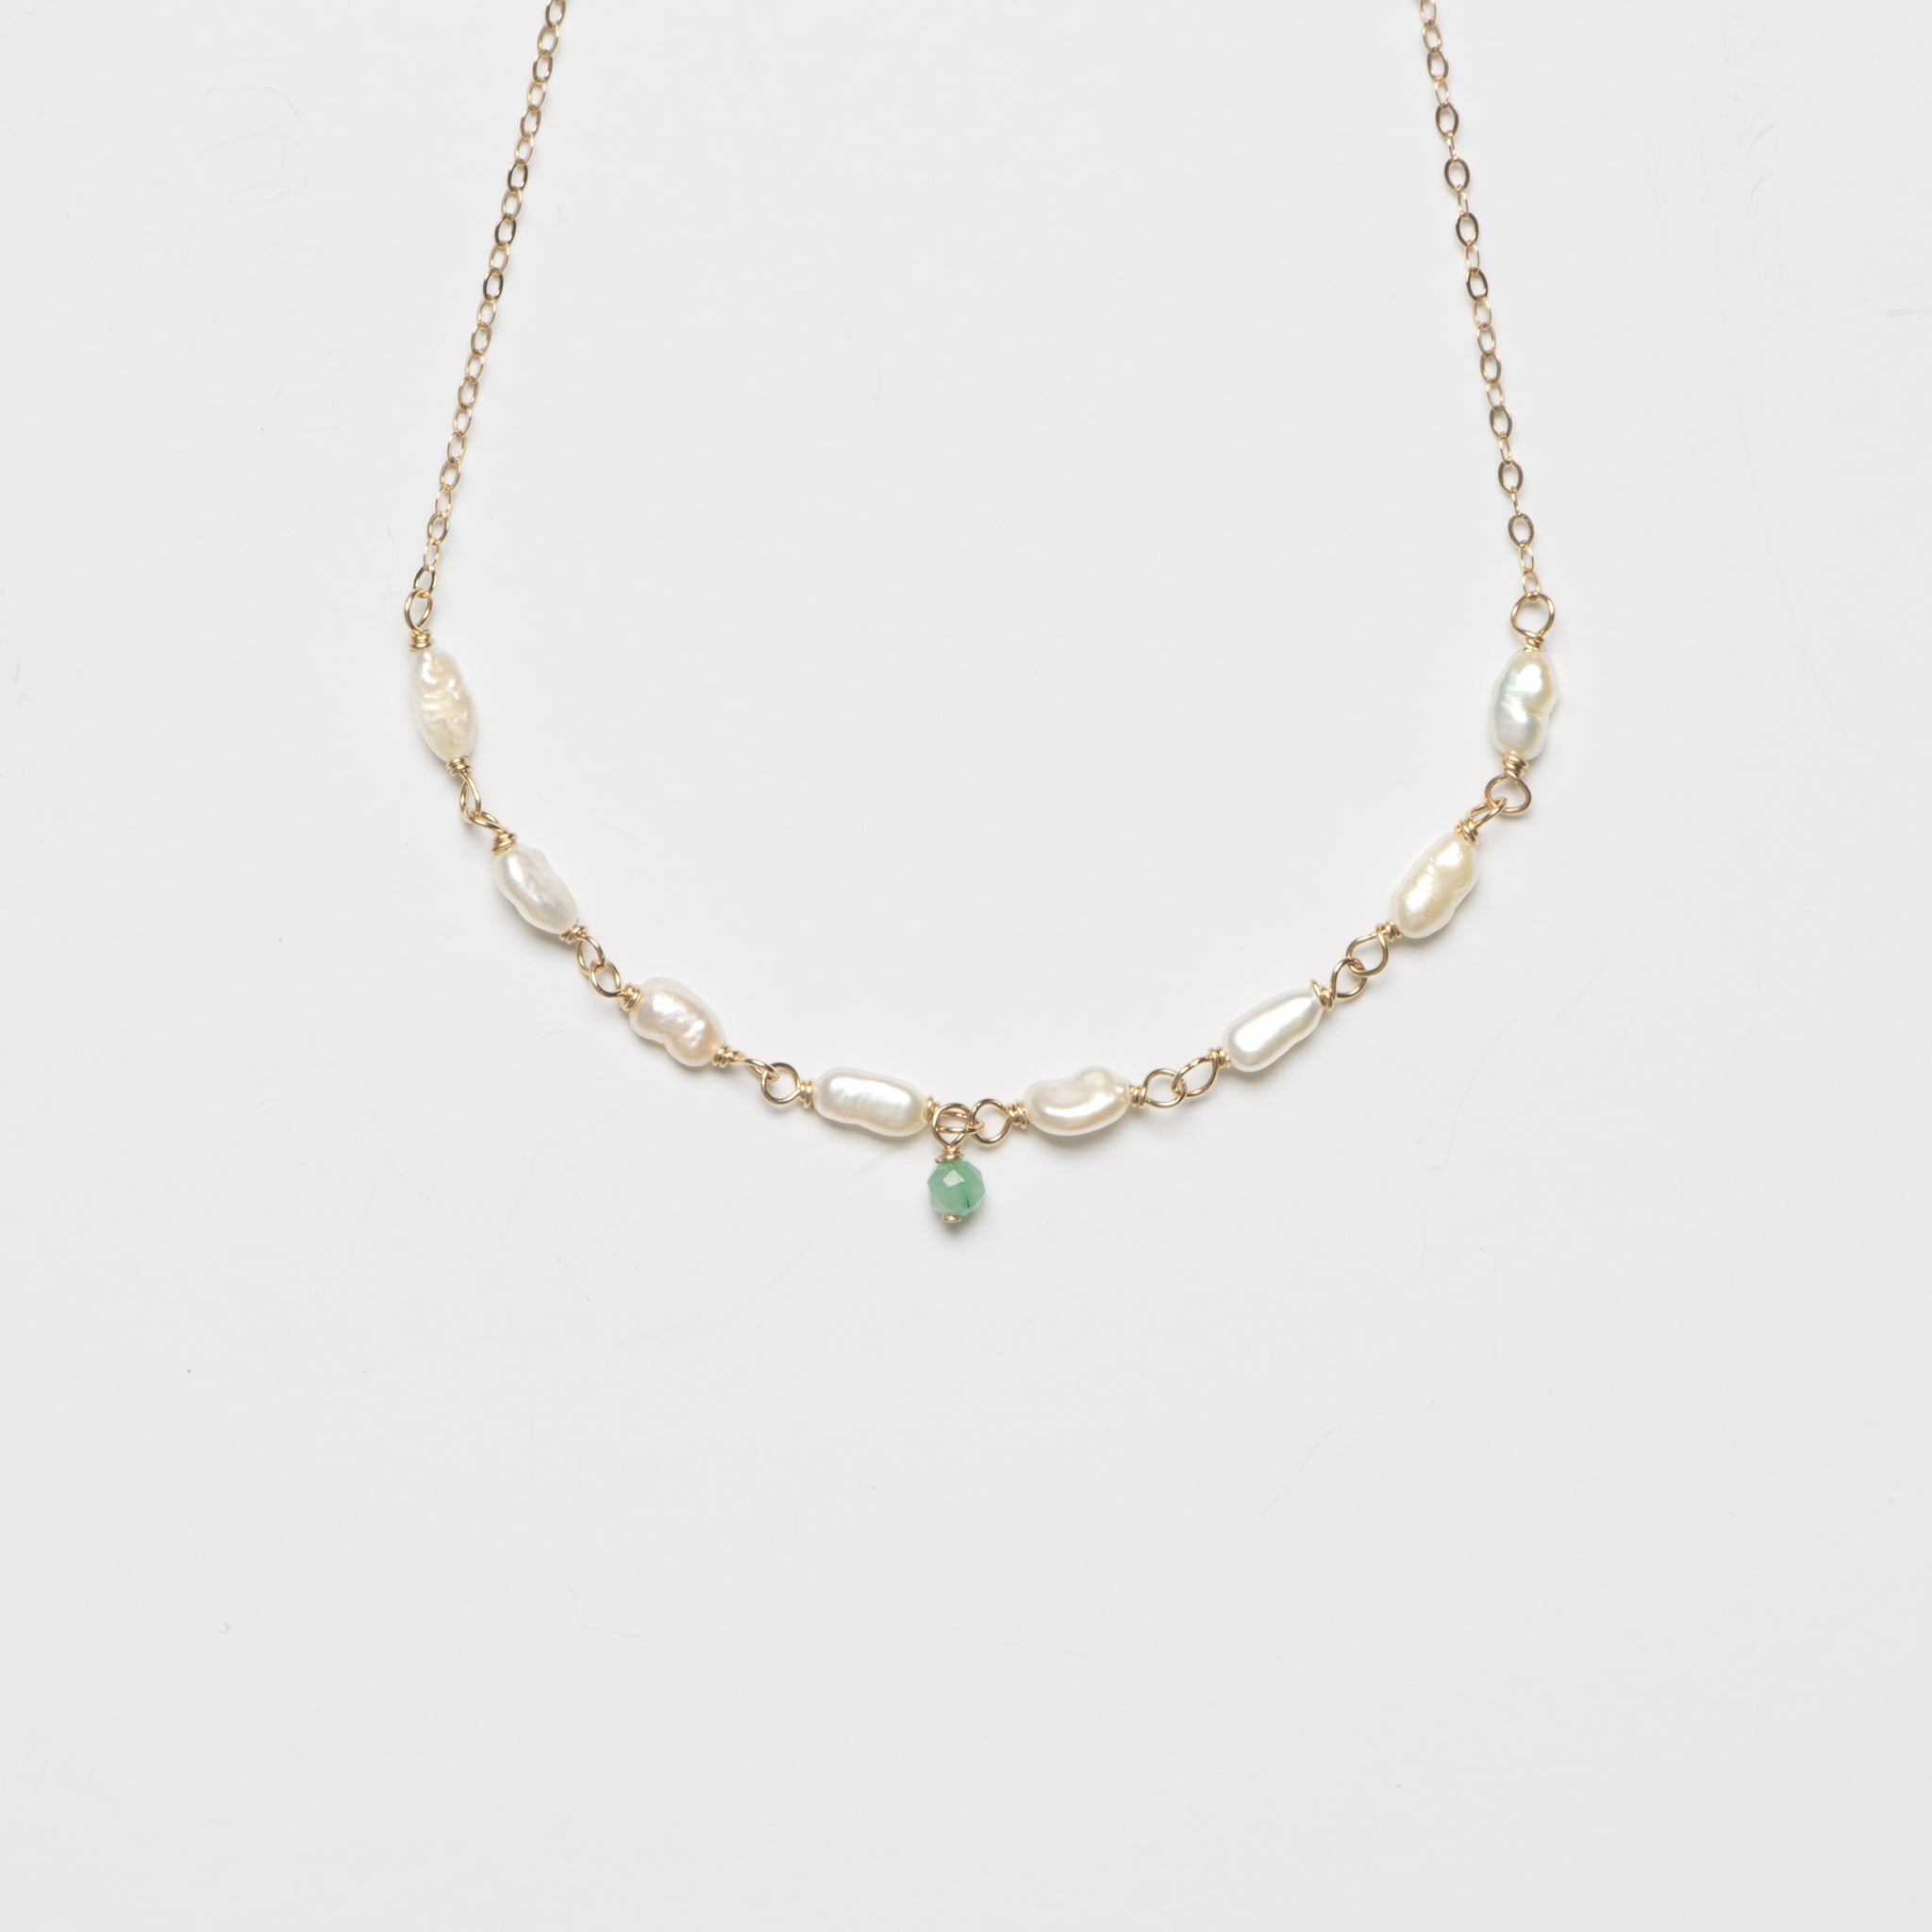 One Emerald Pearl Chain